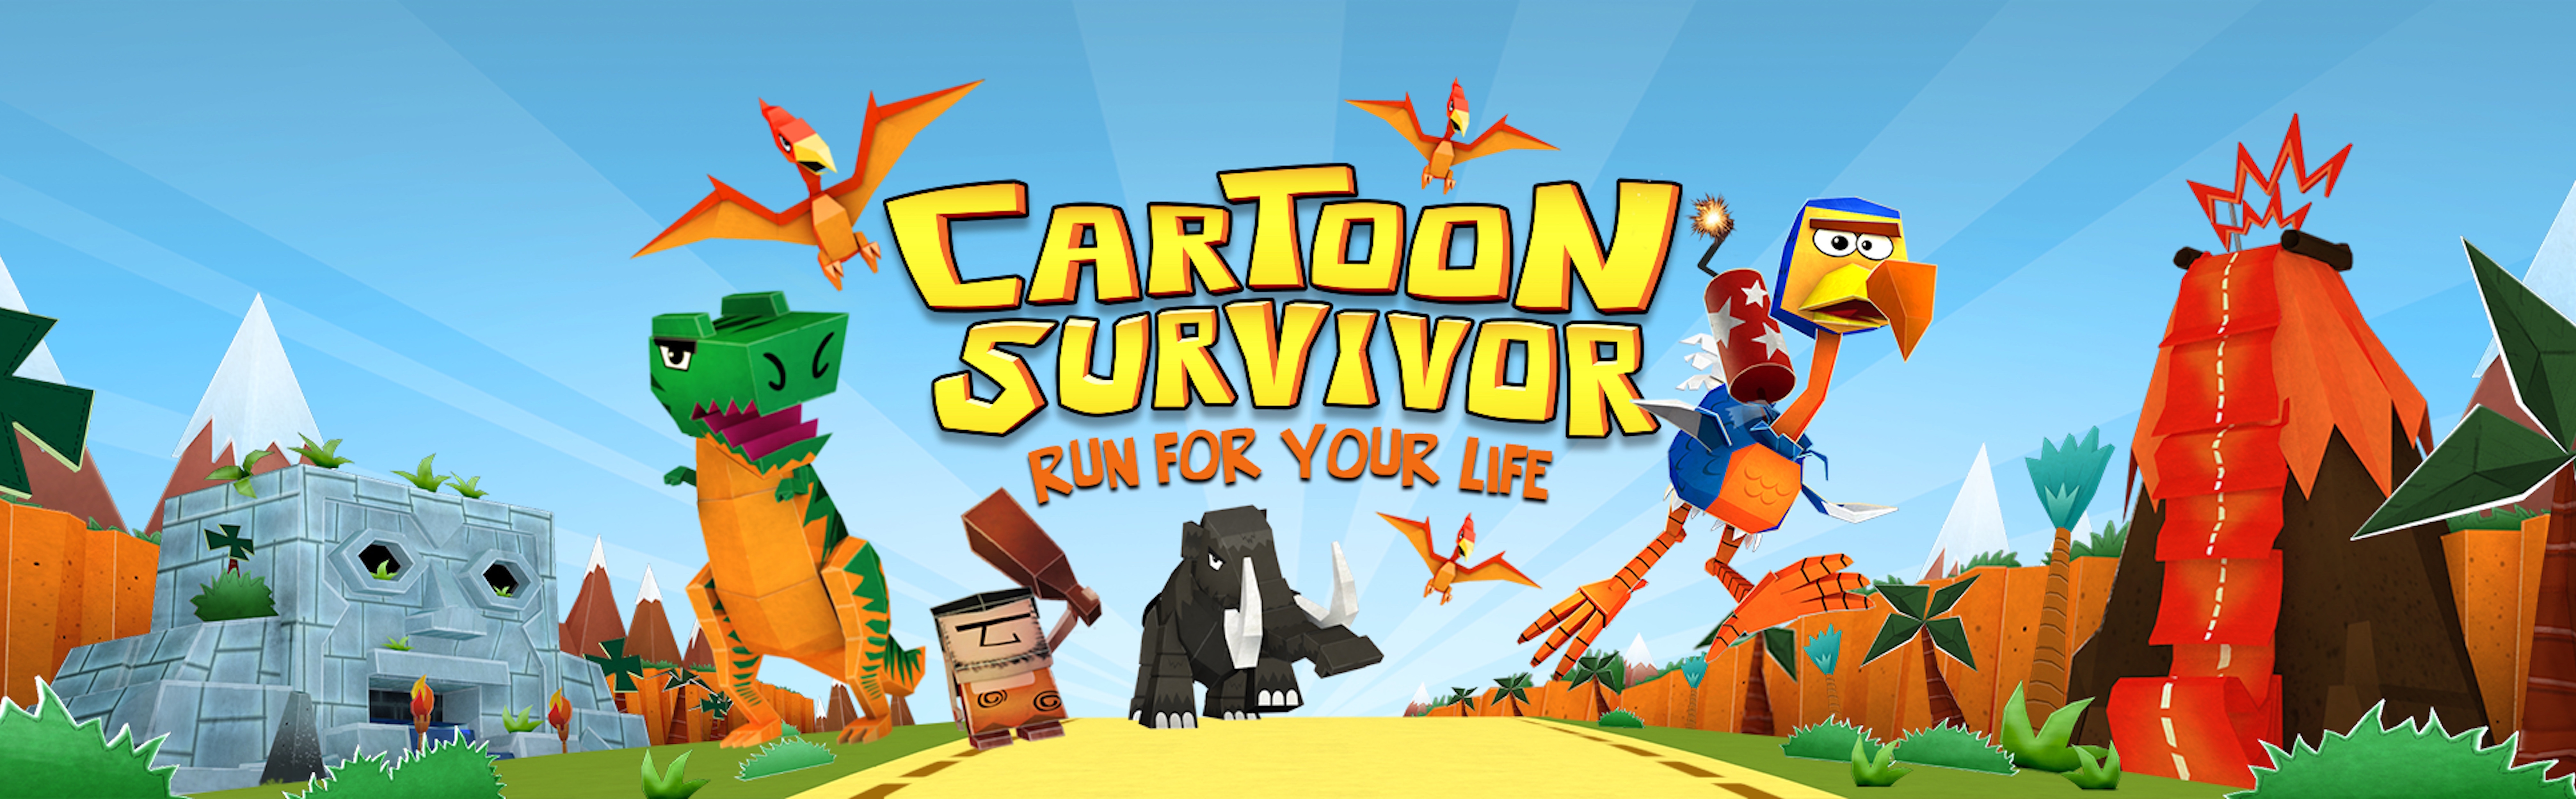 CartoonSurvivor Background 4